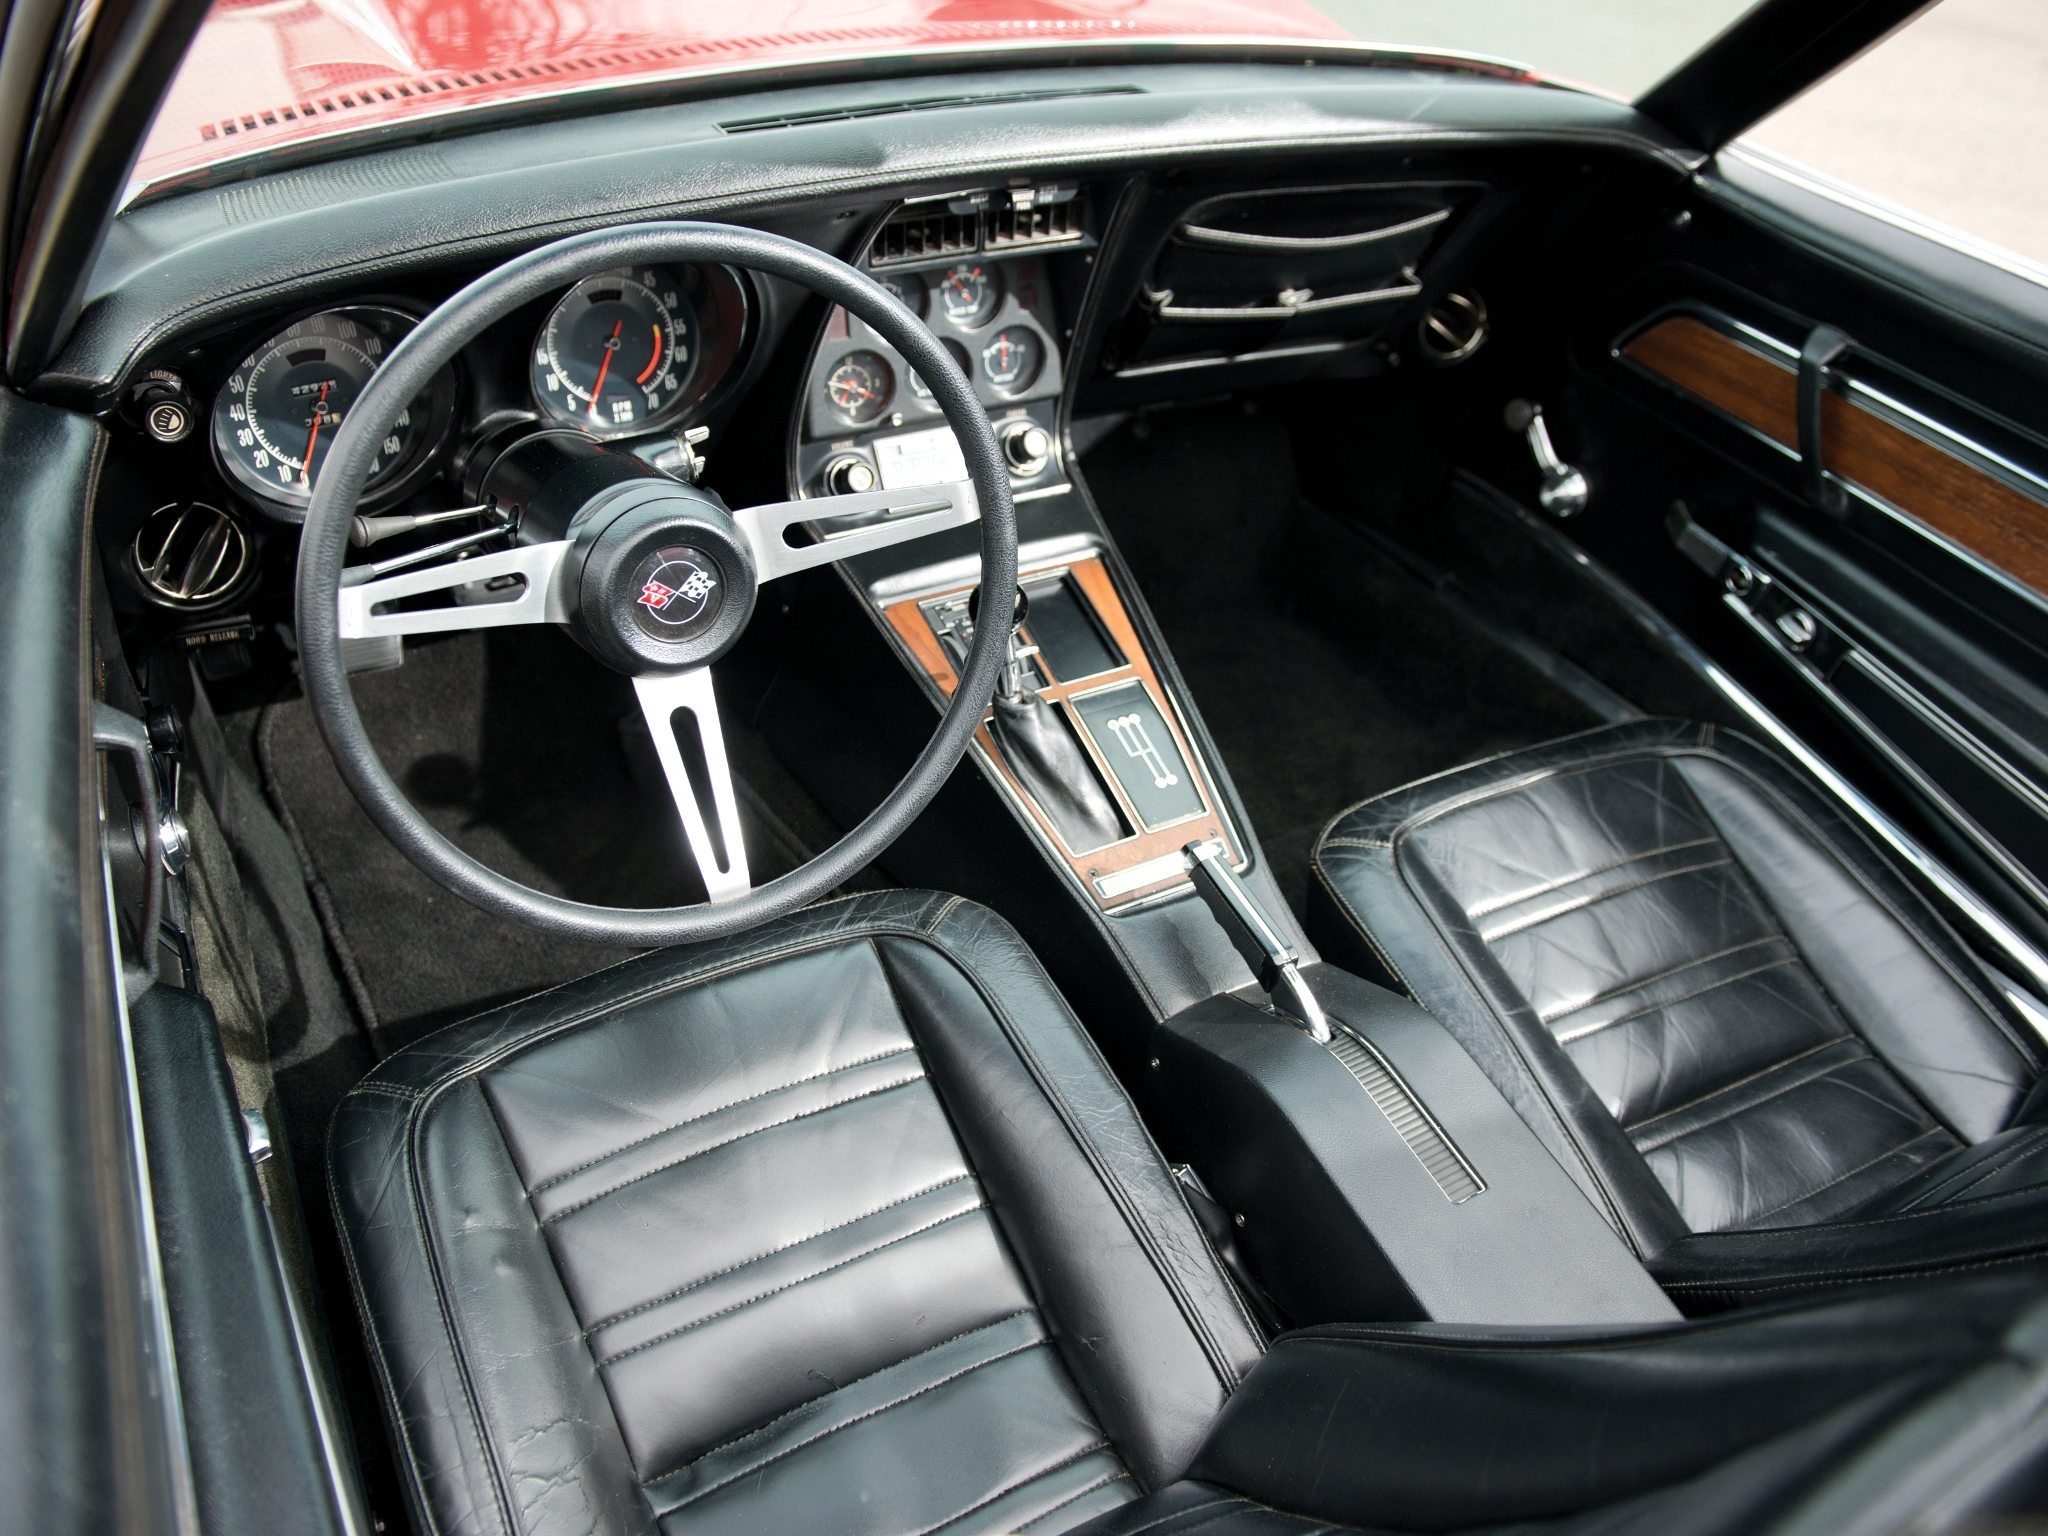 1973 Corvette interior